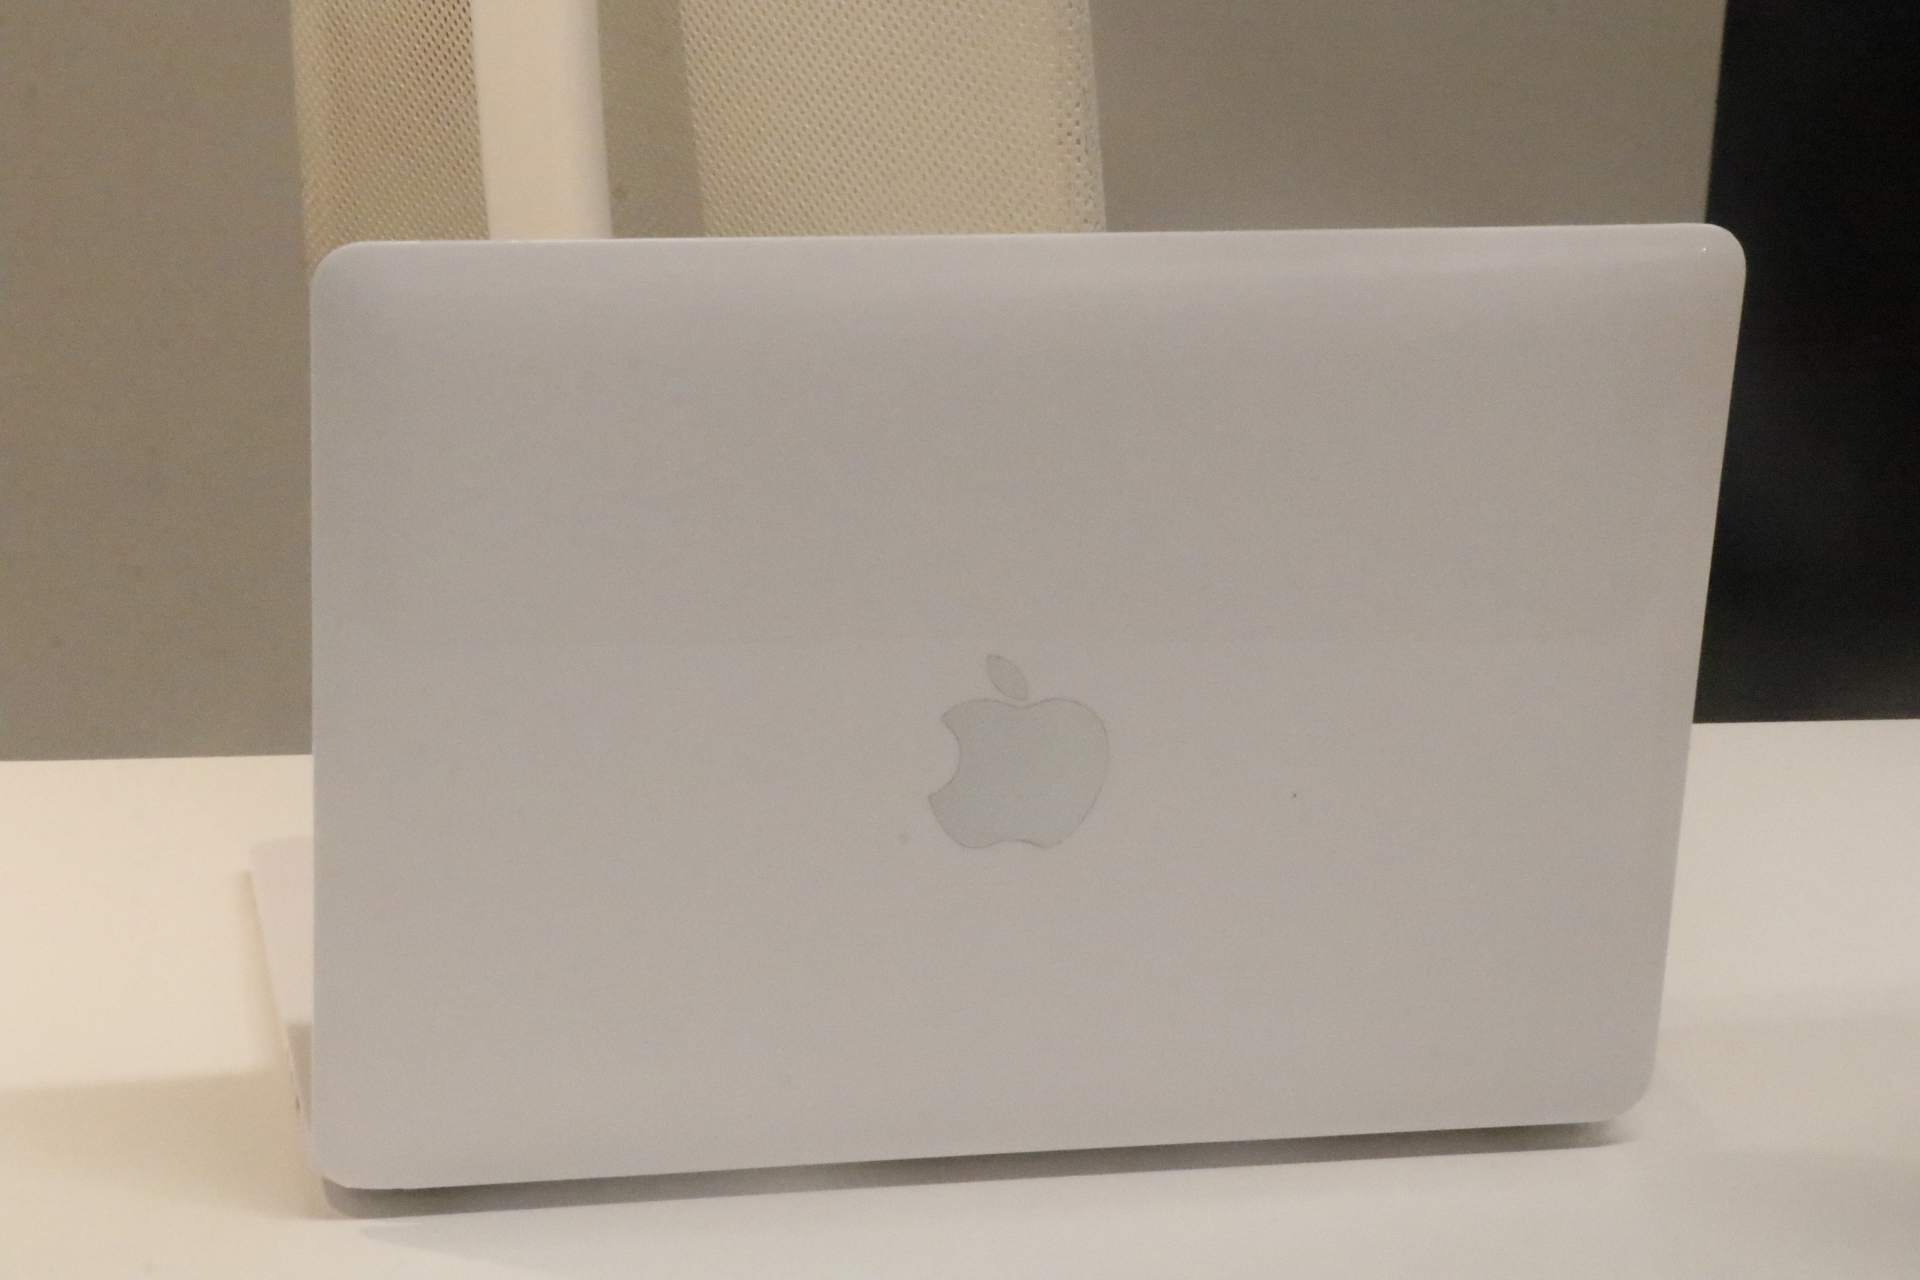 消息称新MacBook Air/Pro都是刘海屏 将采用全新的设计风格